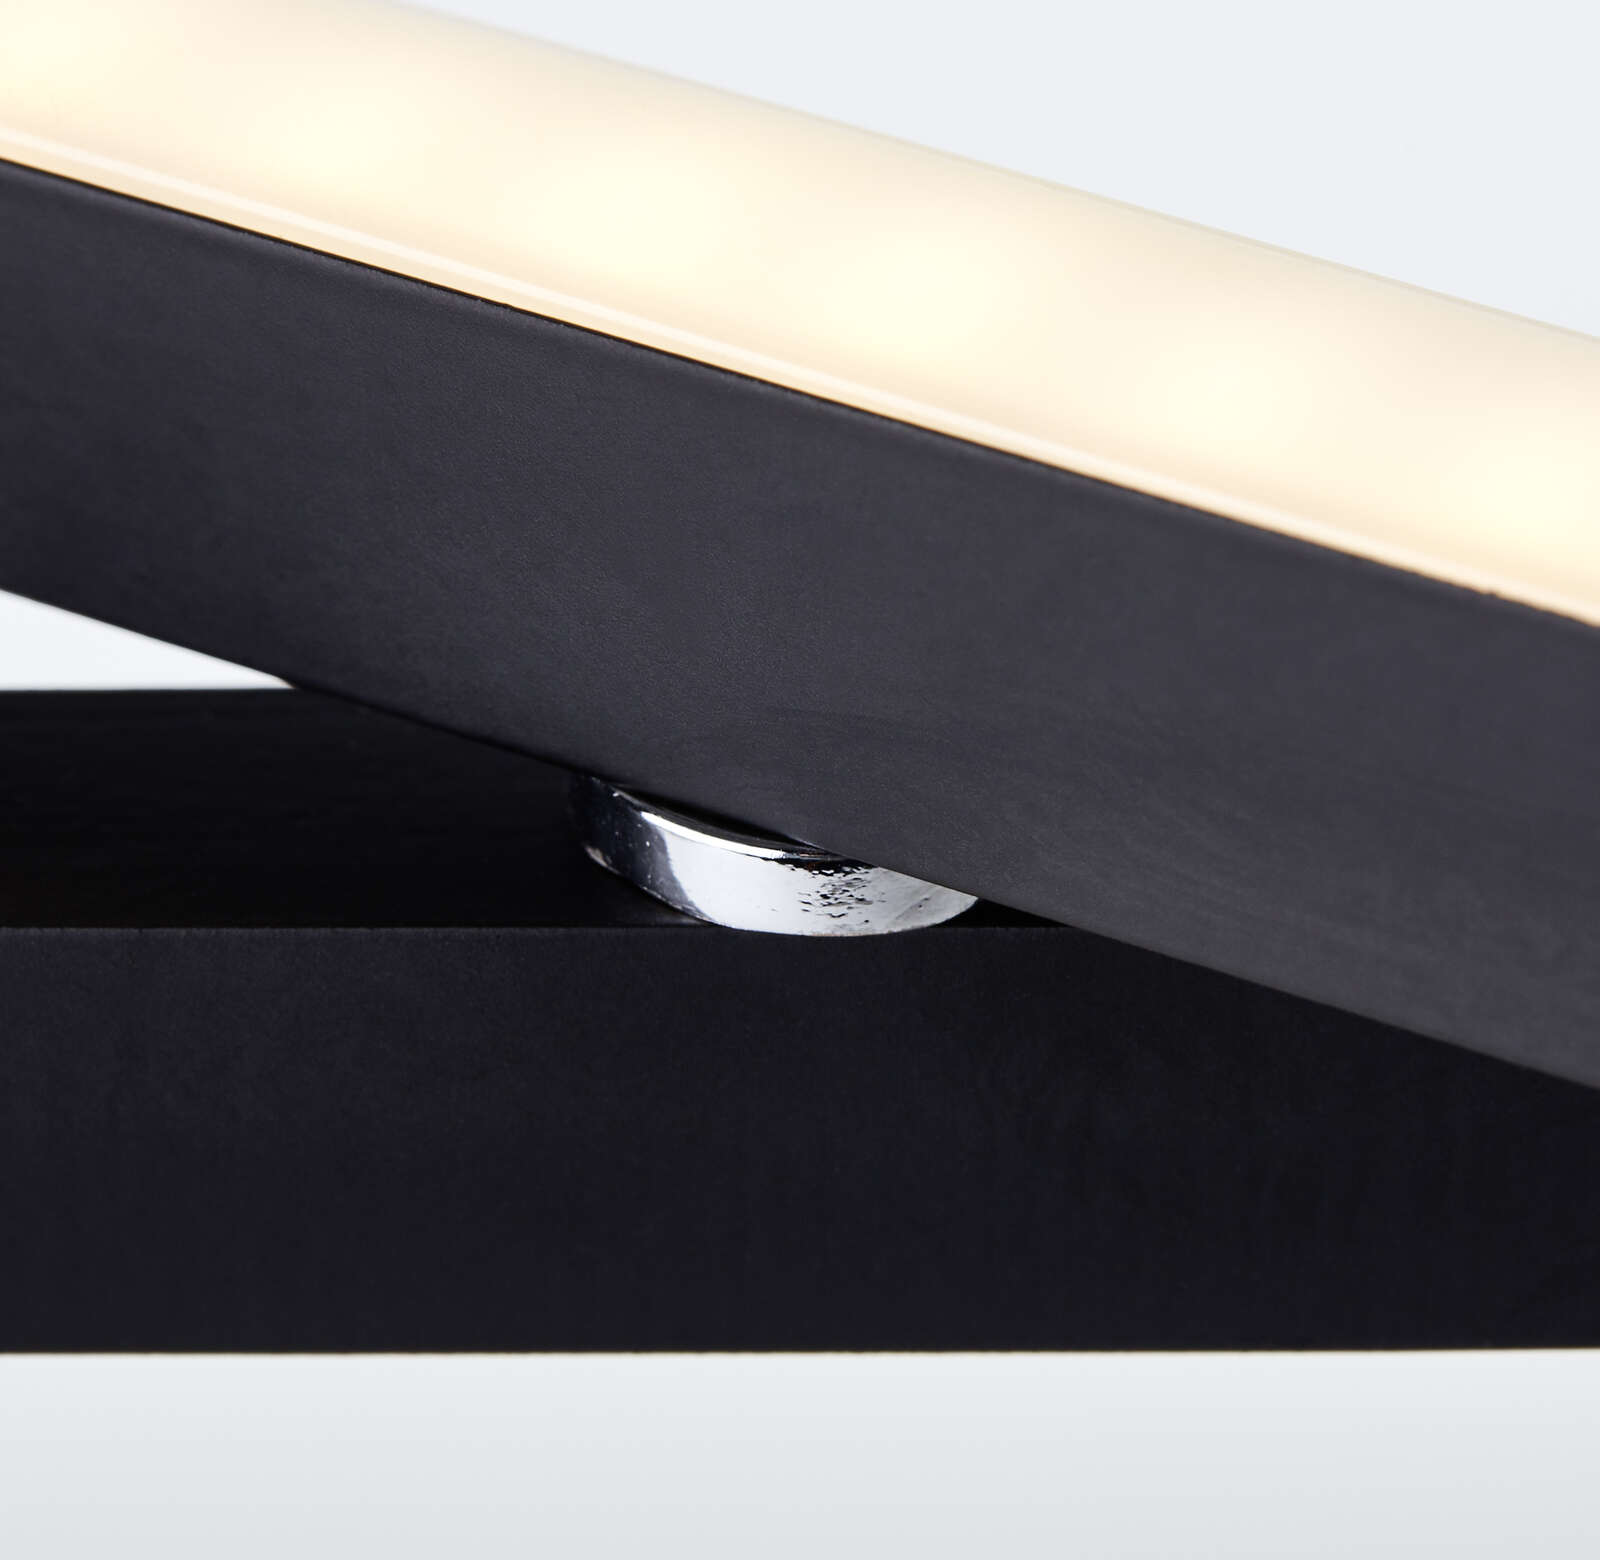             Lampe de table en plastique - Mats 1 - Noir
        